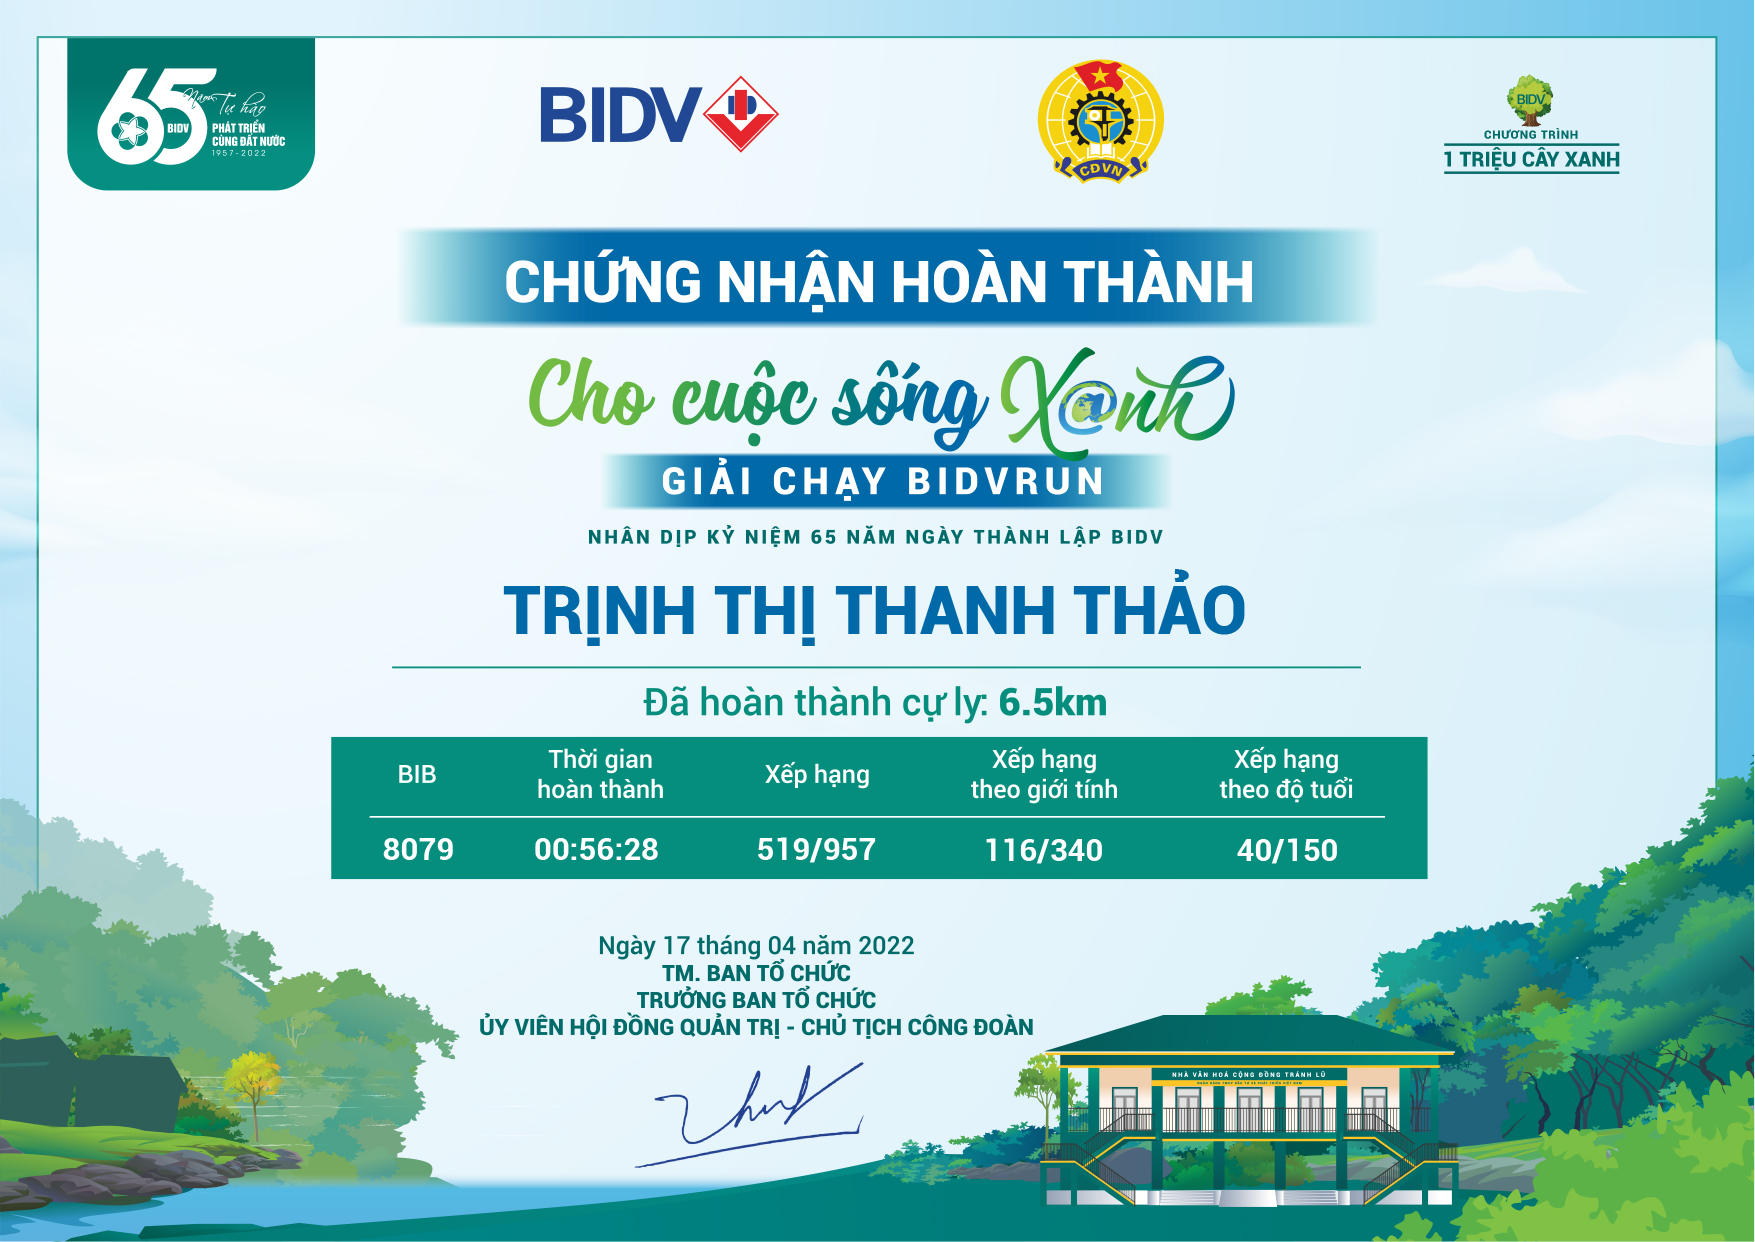 8079 - Trịnh Thị Thanh Thảo